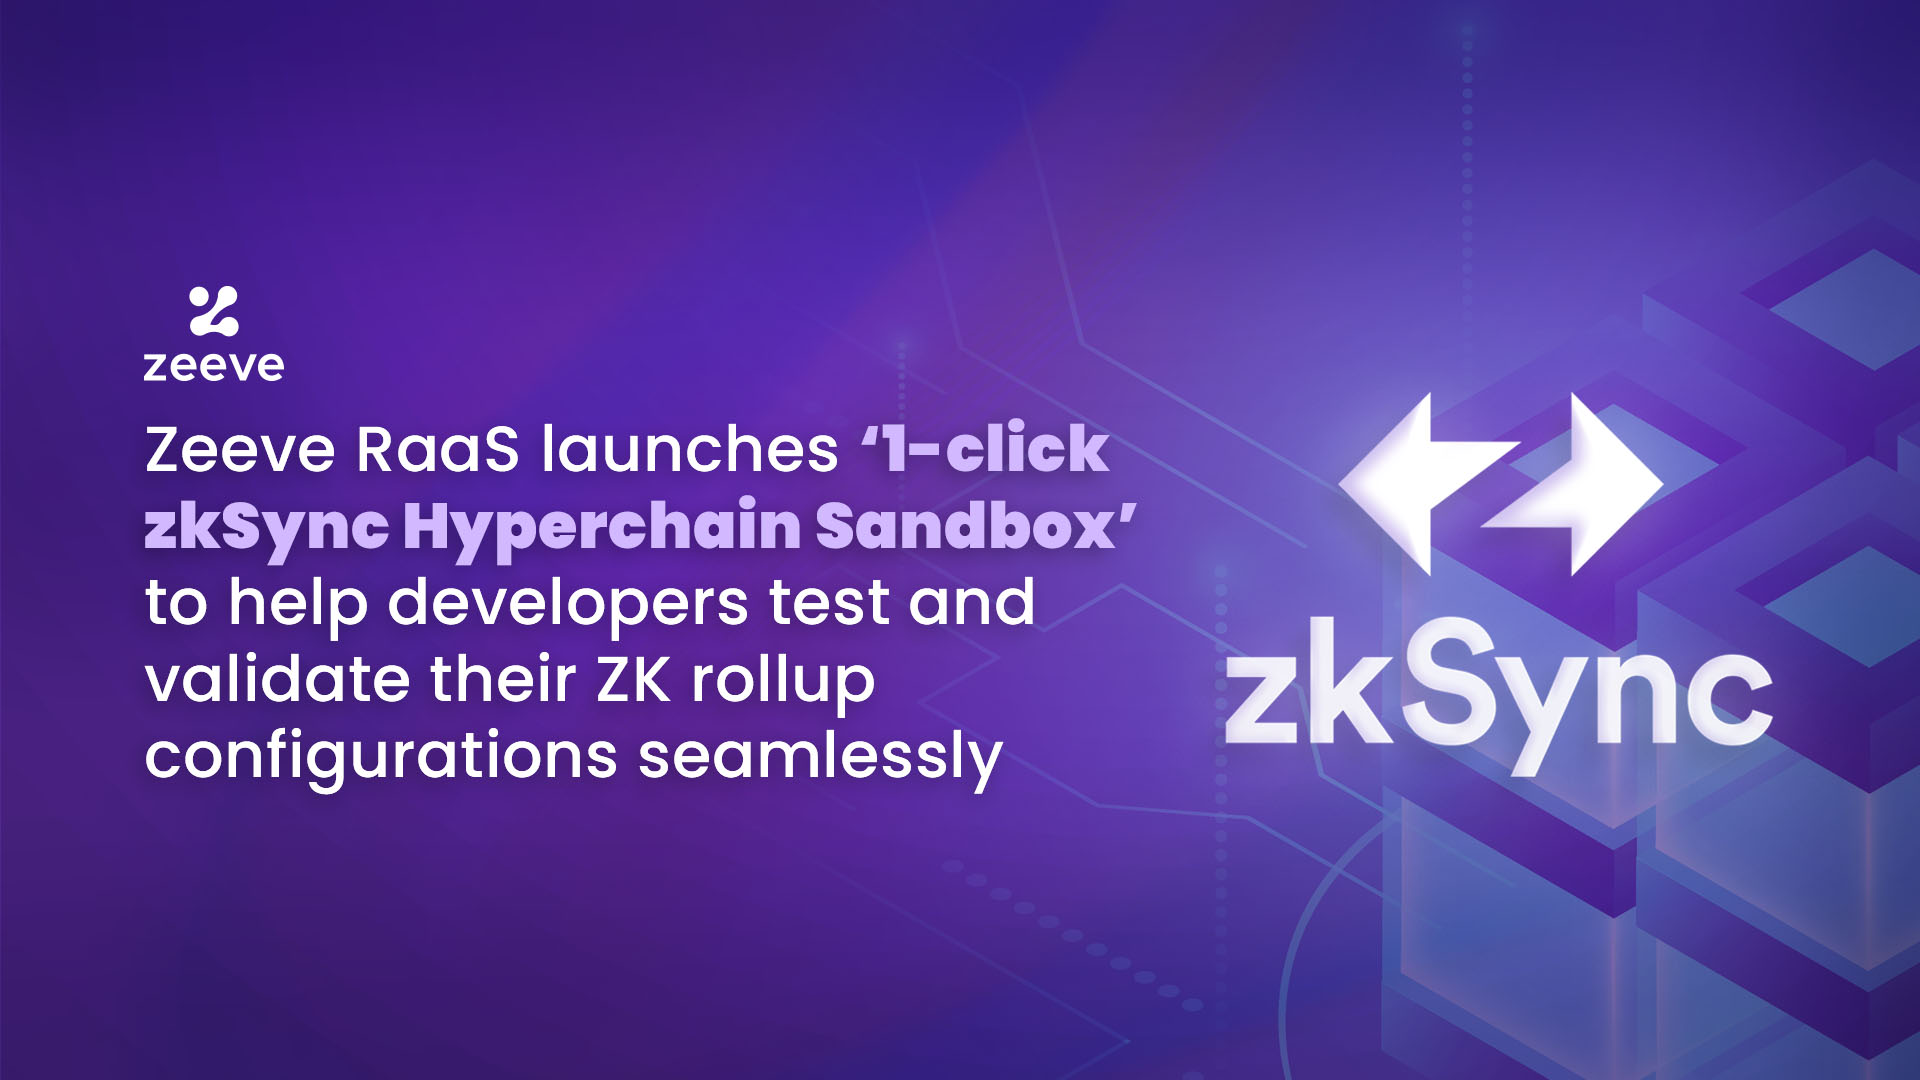 Zeeve and Zksync Hyperchains sandbox